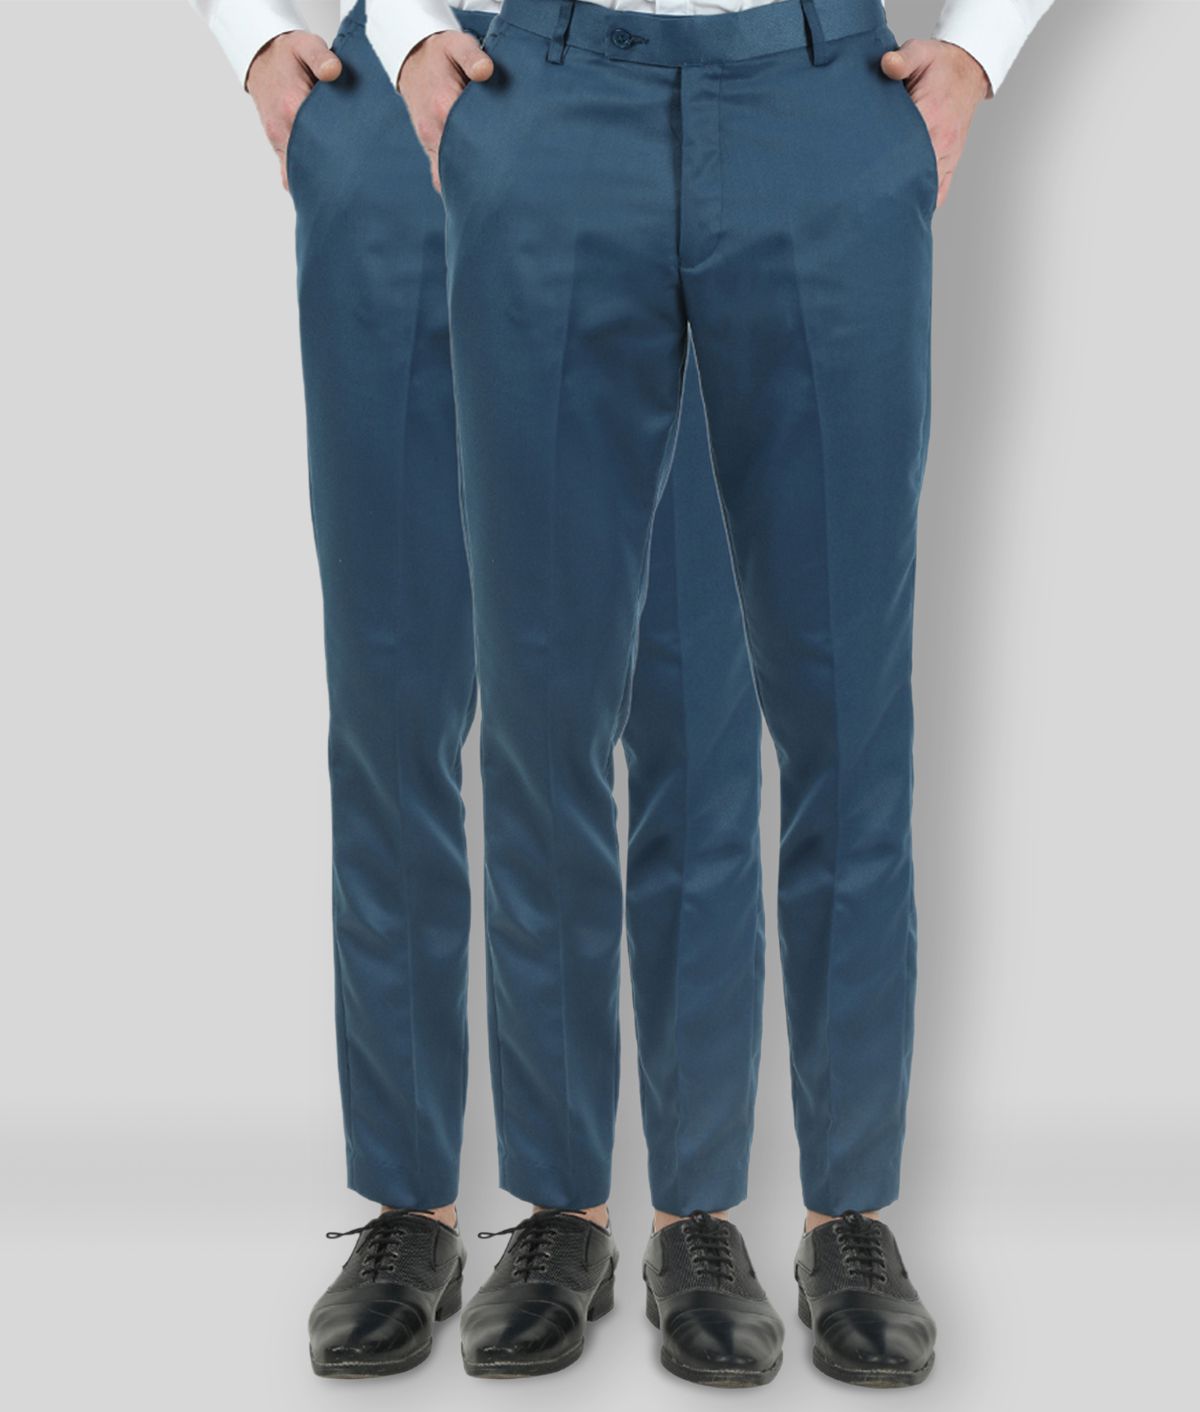     			VEI SASTRE - Blue Polycotton Slim - Fit Men's Formal Pants ( Pack of 2 )